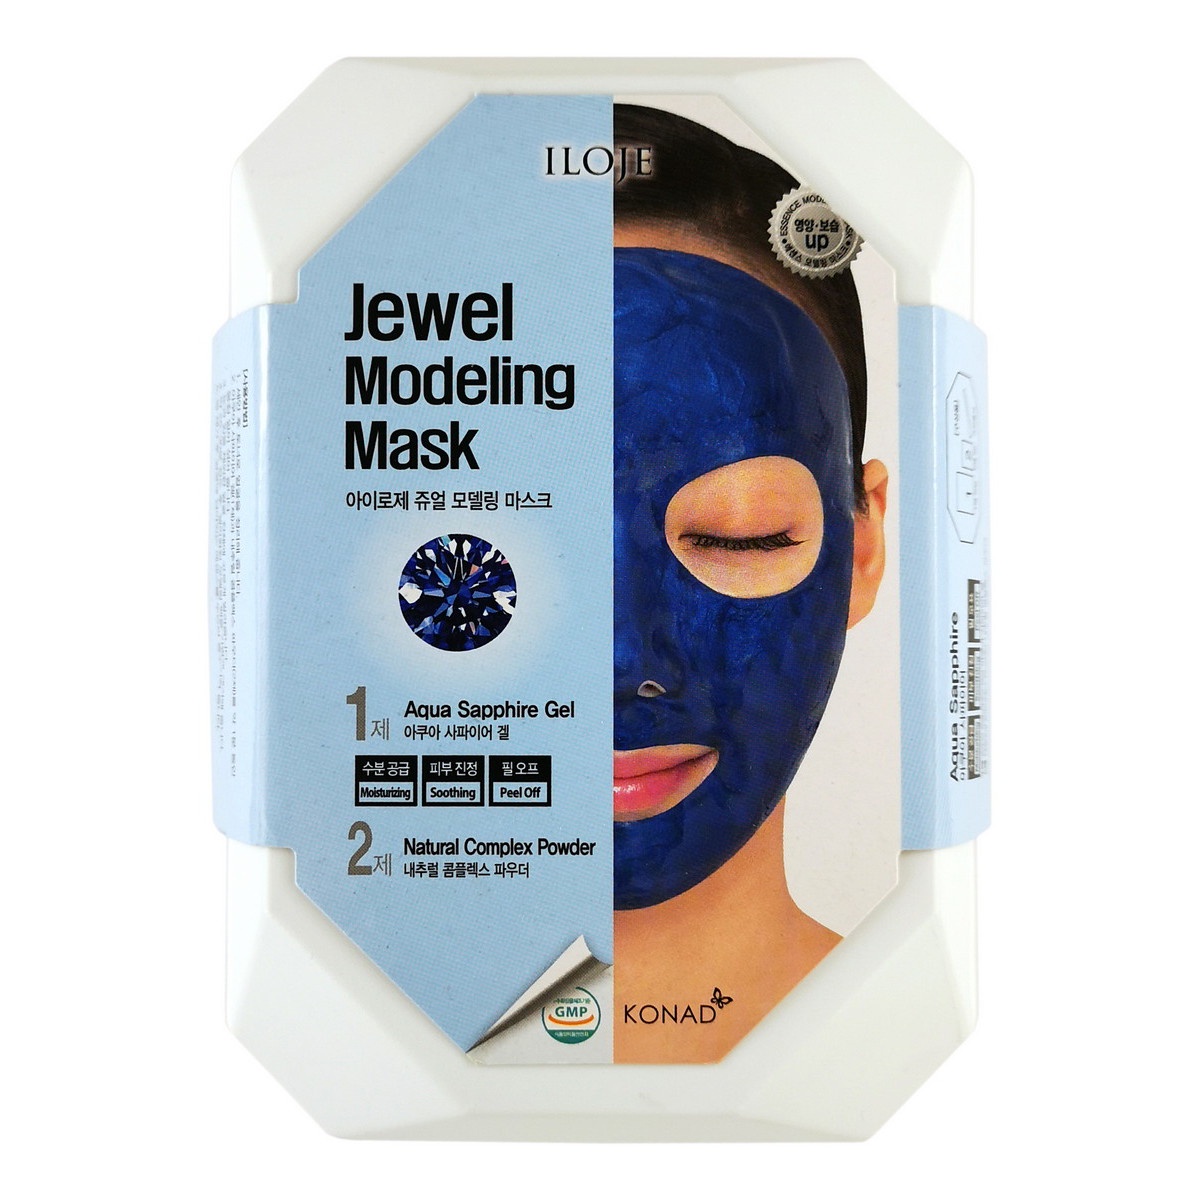 Маска косметическая Konad / Моделирующая маска для лица с сапфировой пудрой, арт. 726066, 50 g*1, 5 g*1